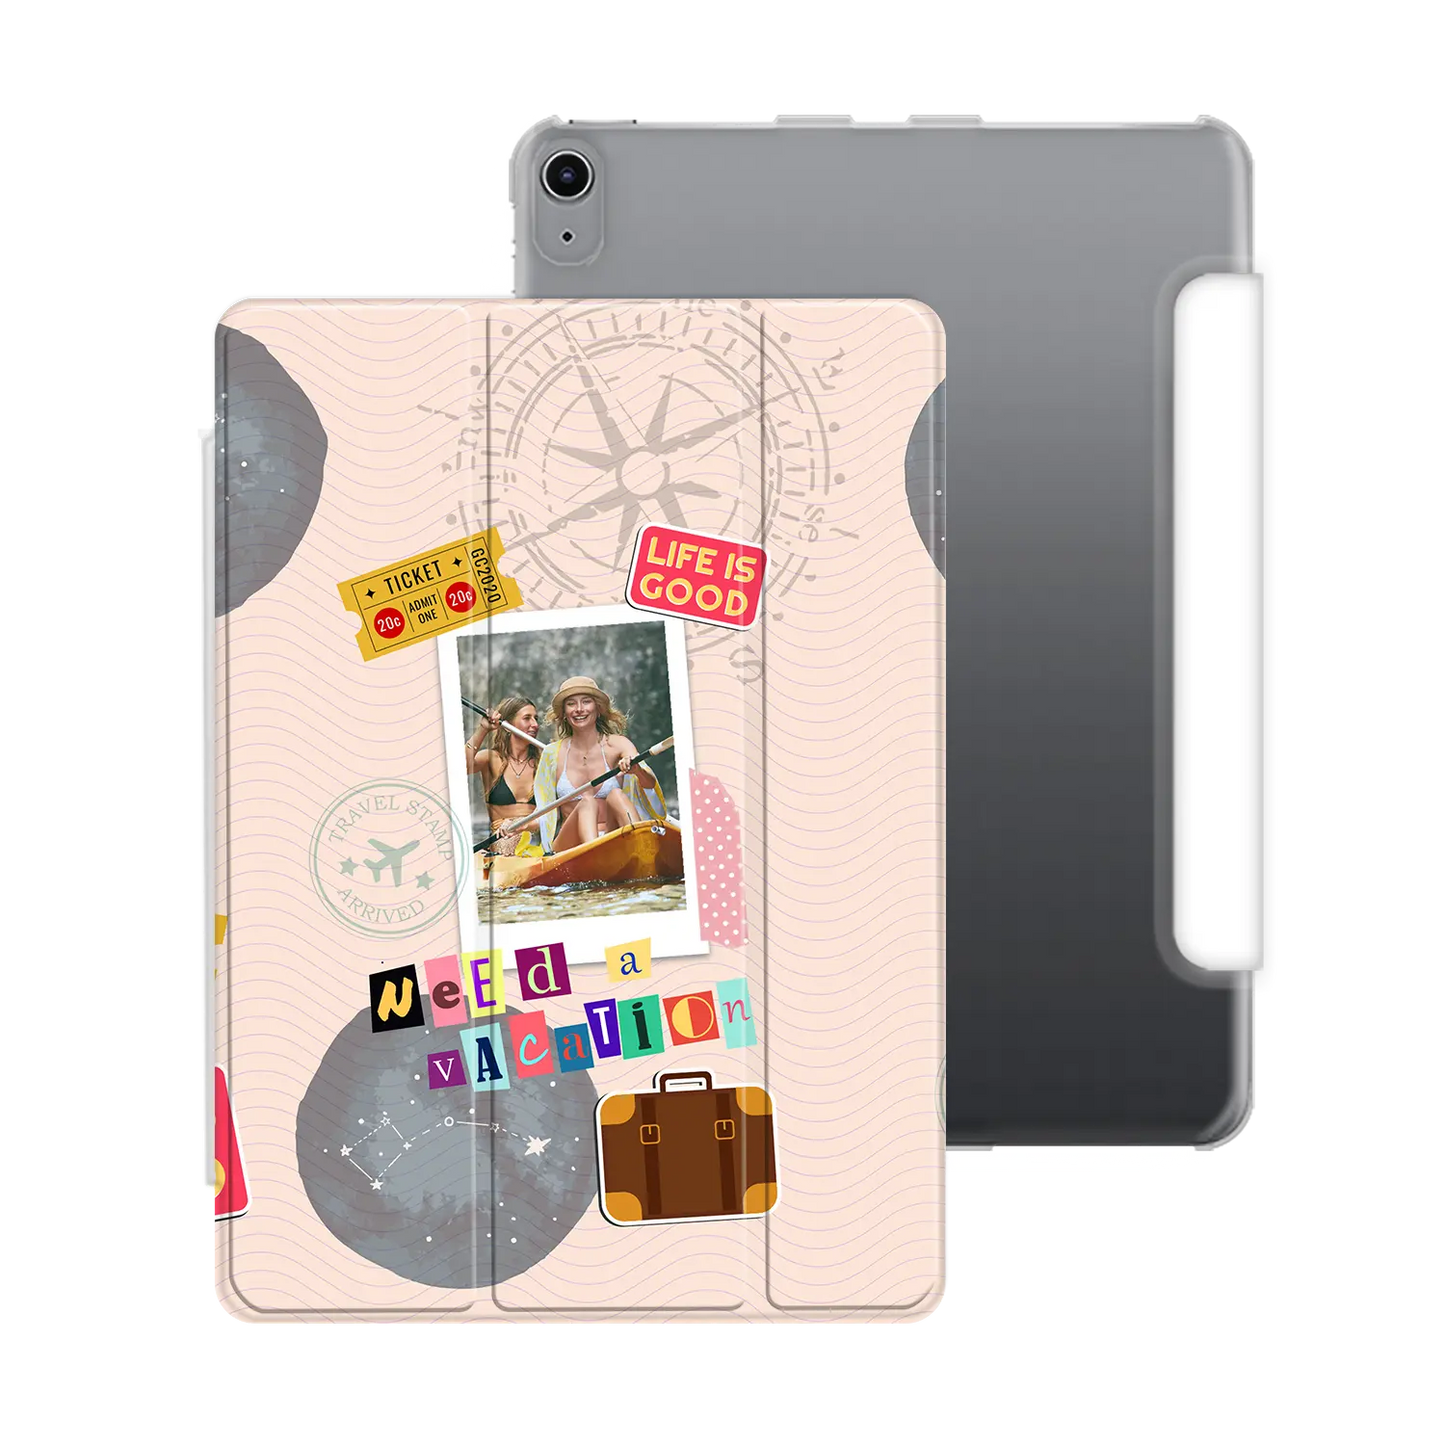 Besoin de vacances - Coque iPad personnalisée